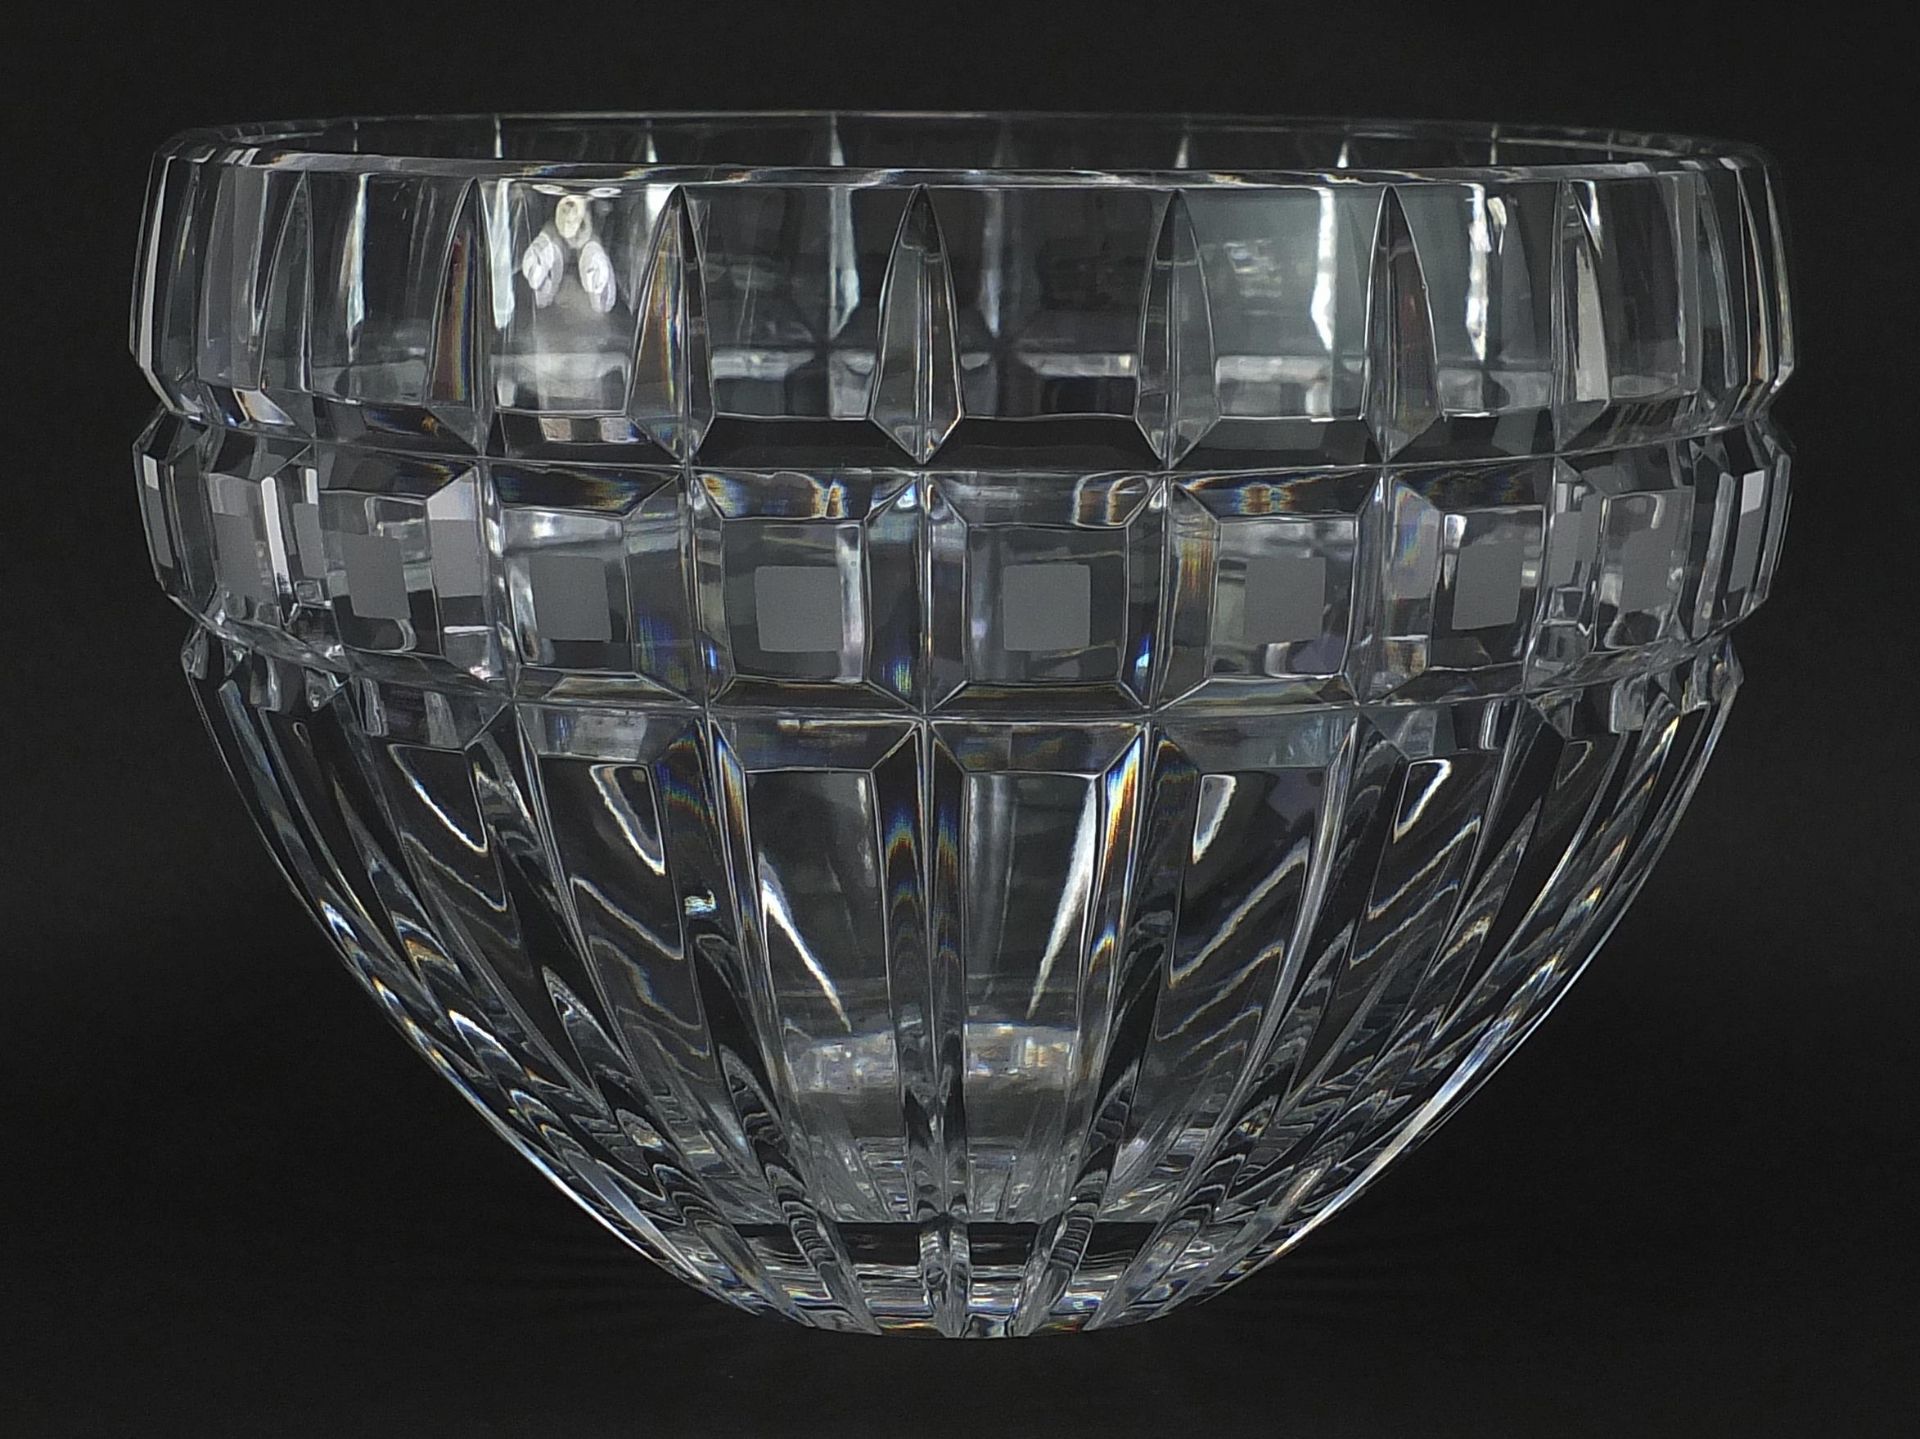 Waterford Crystal Marquis vase, 19.5cm in diameter